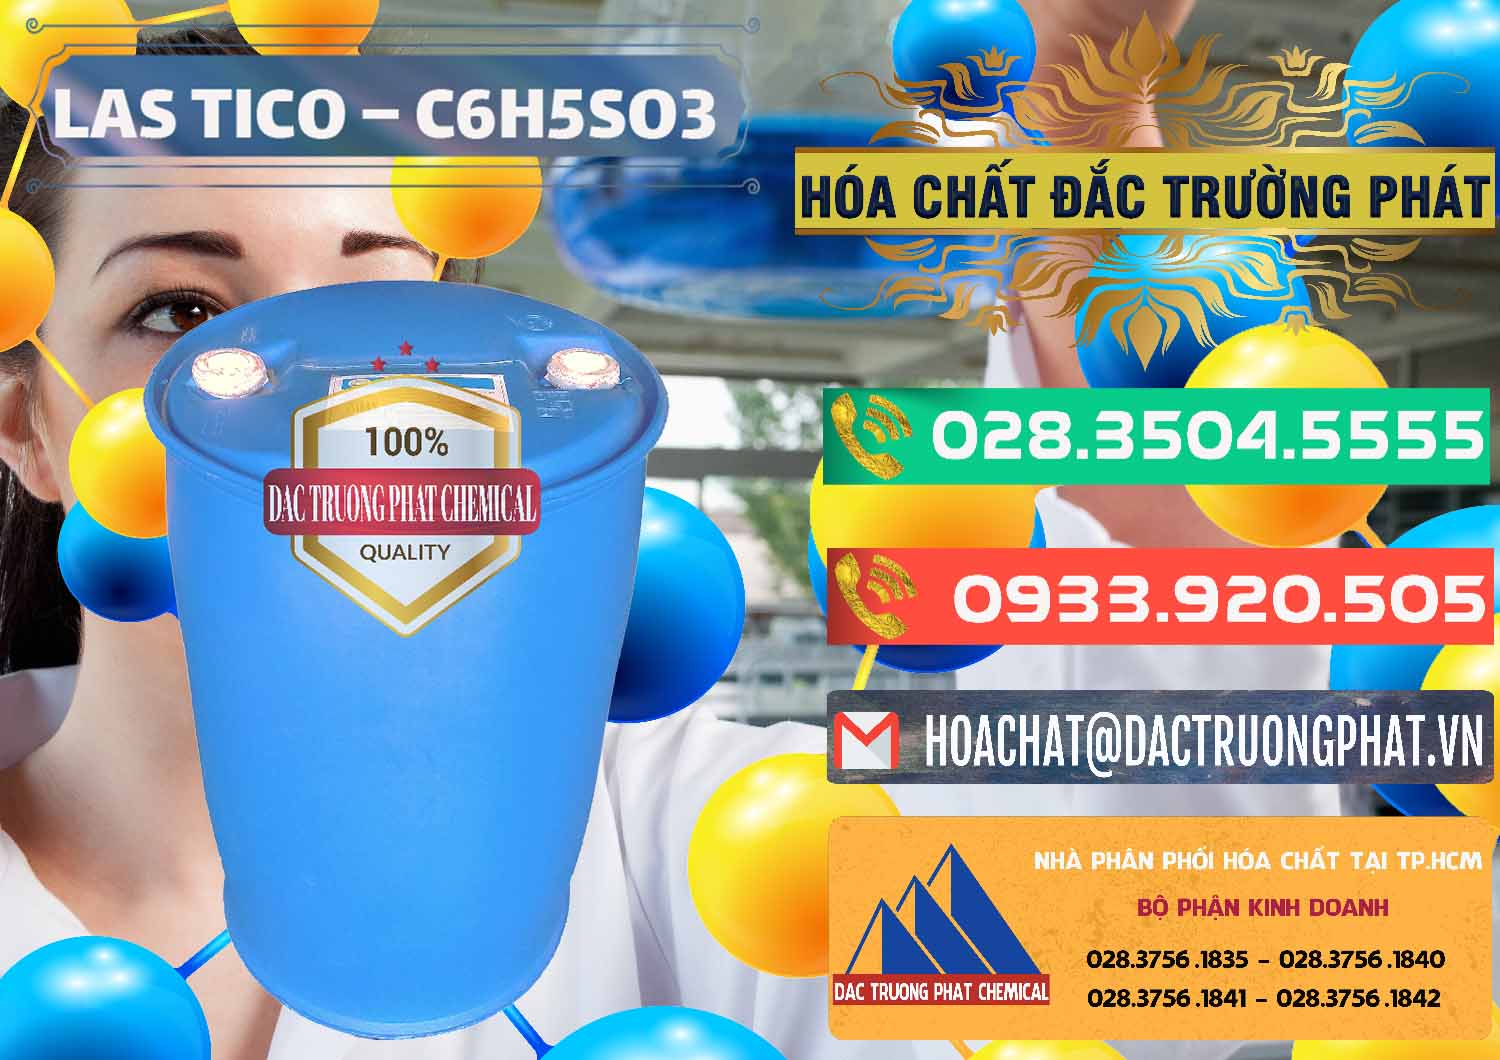 Chuyên kinh doanh & cung cấp Chất tạo bọt Las H Tico Việt Nam - 0190 - Nơi chuyên bán & phân phối hóa chất tại TP.HCM - congtyhoachat.com.vn